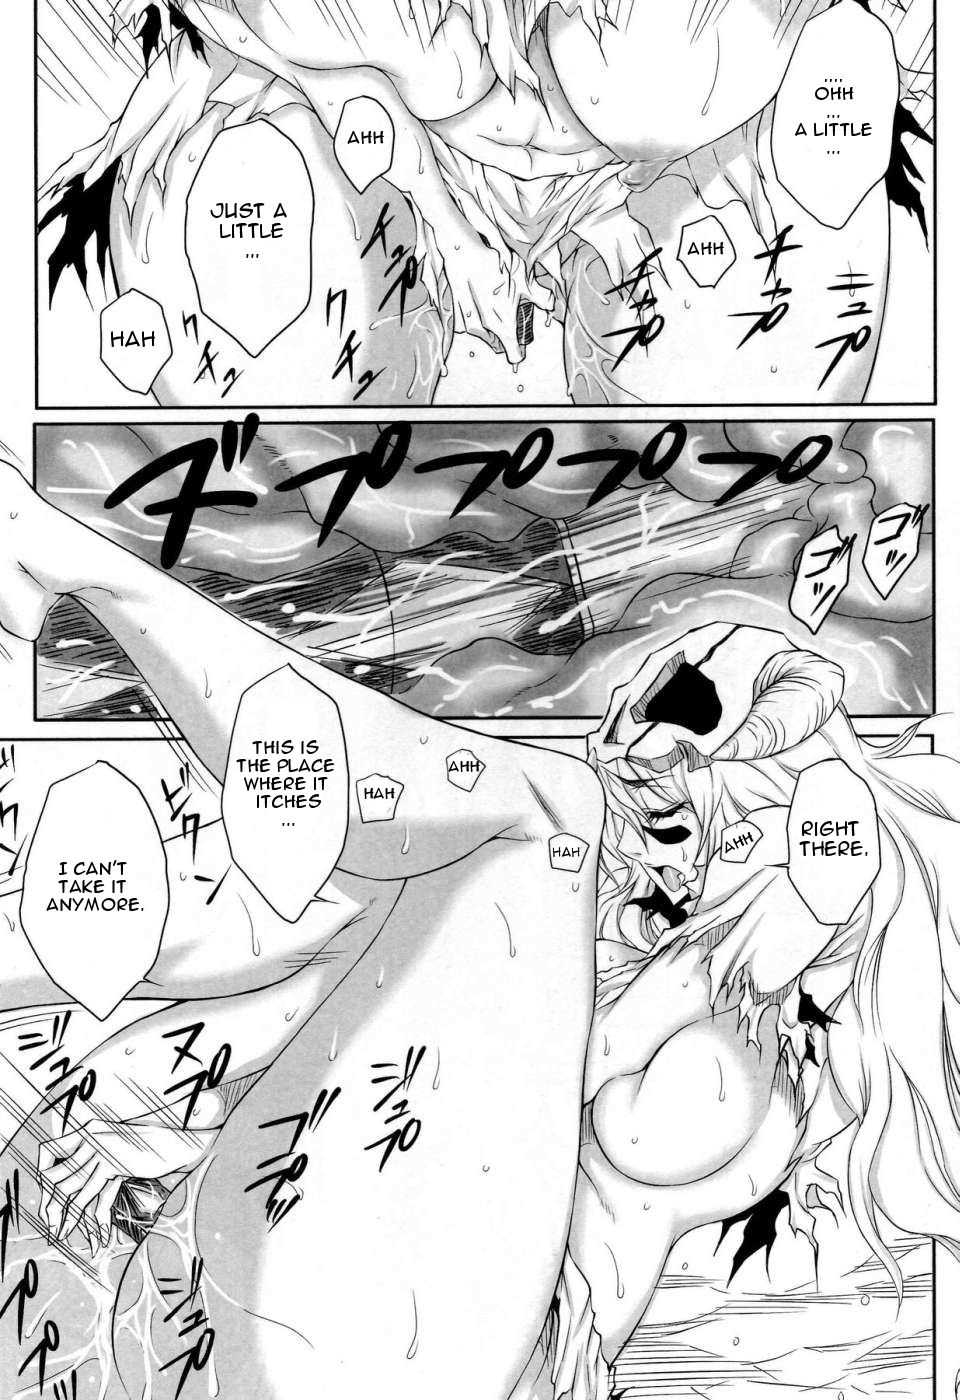 Page 16 | Nel - Bleach Hentai Doujinshi by Heta No Yoko Zuki - Pururin,  Free Online Hentai Manga and Doujinshi Reader